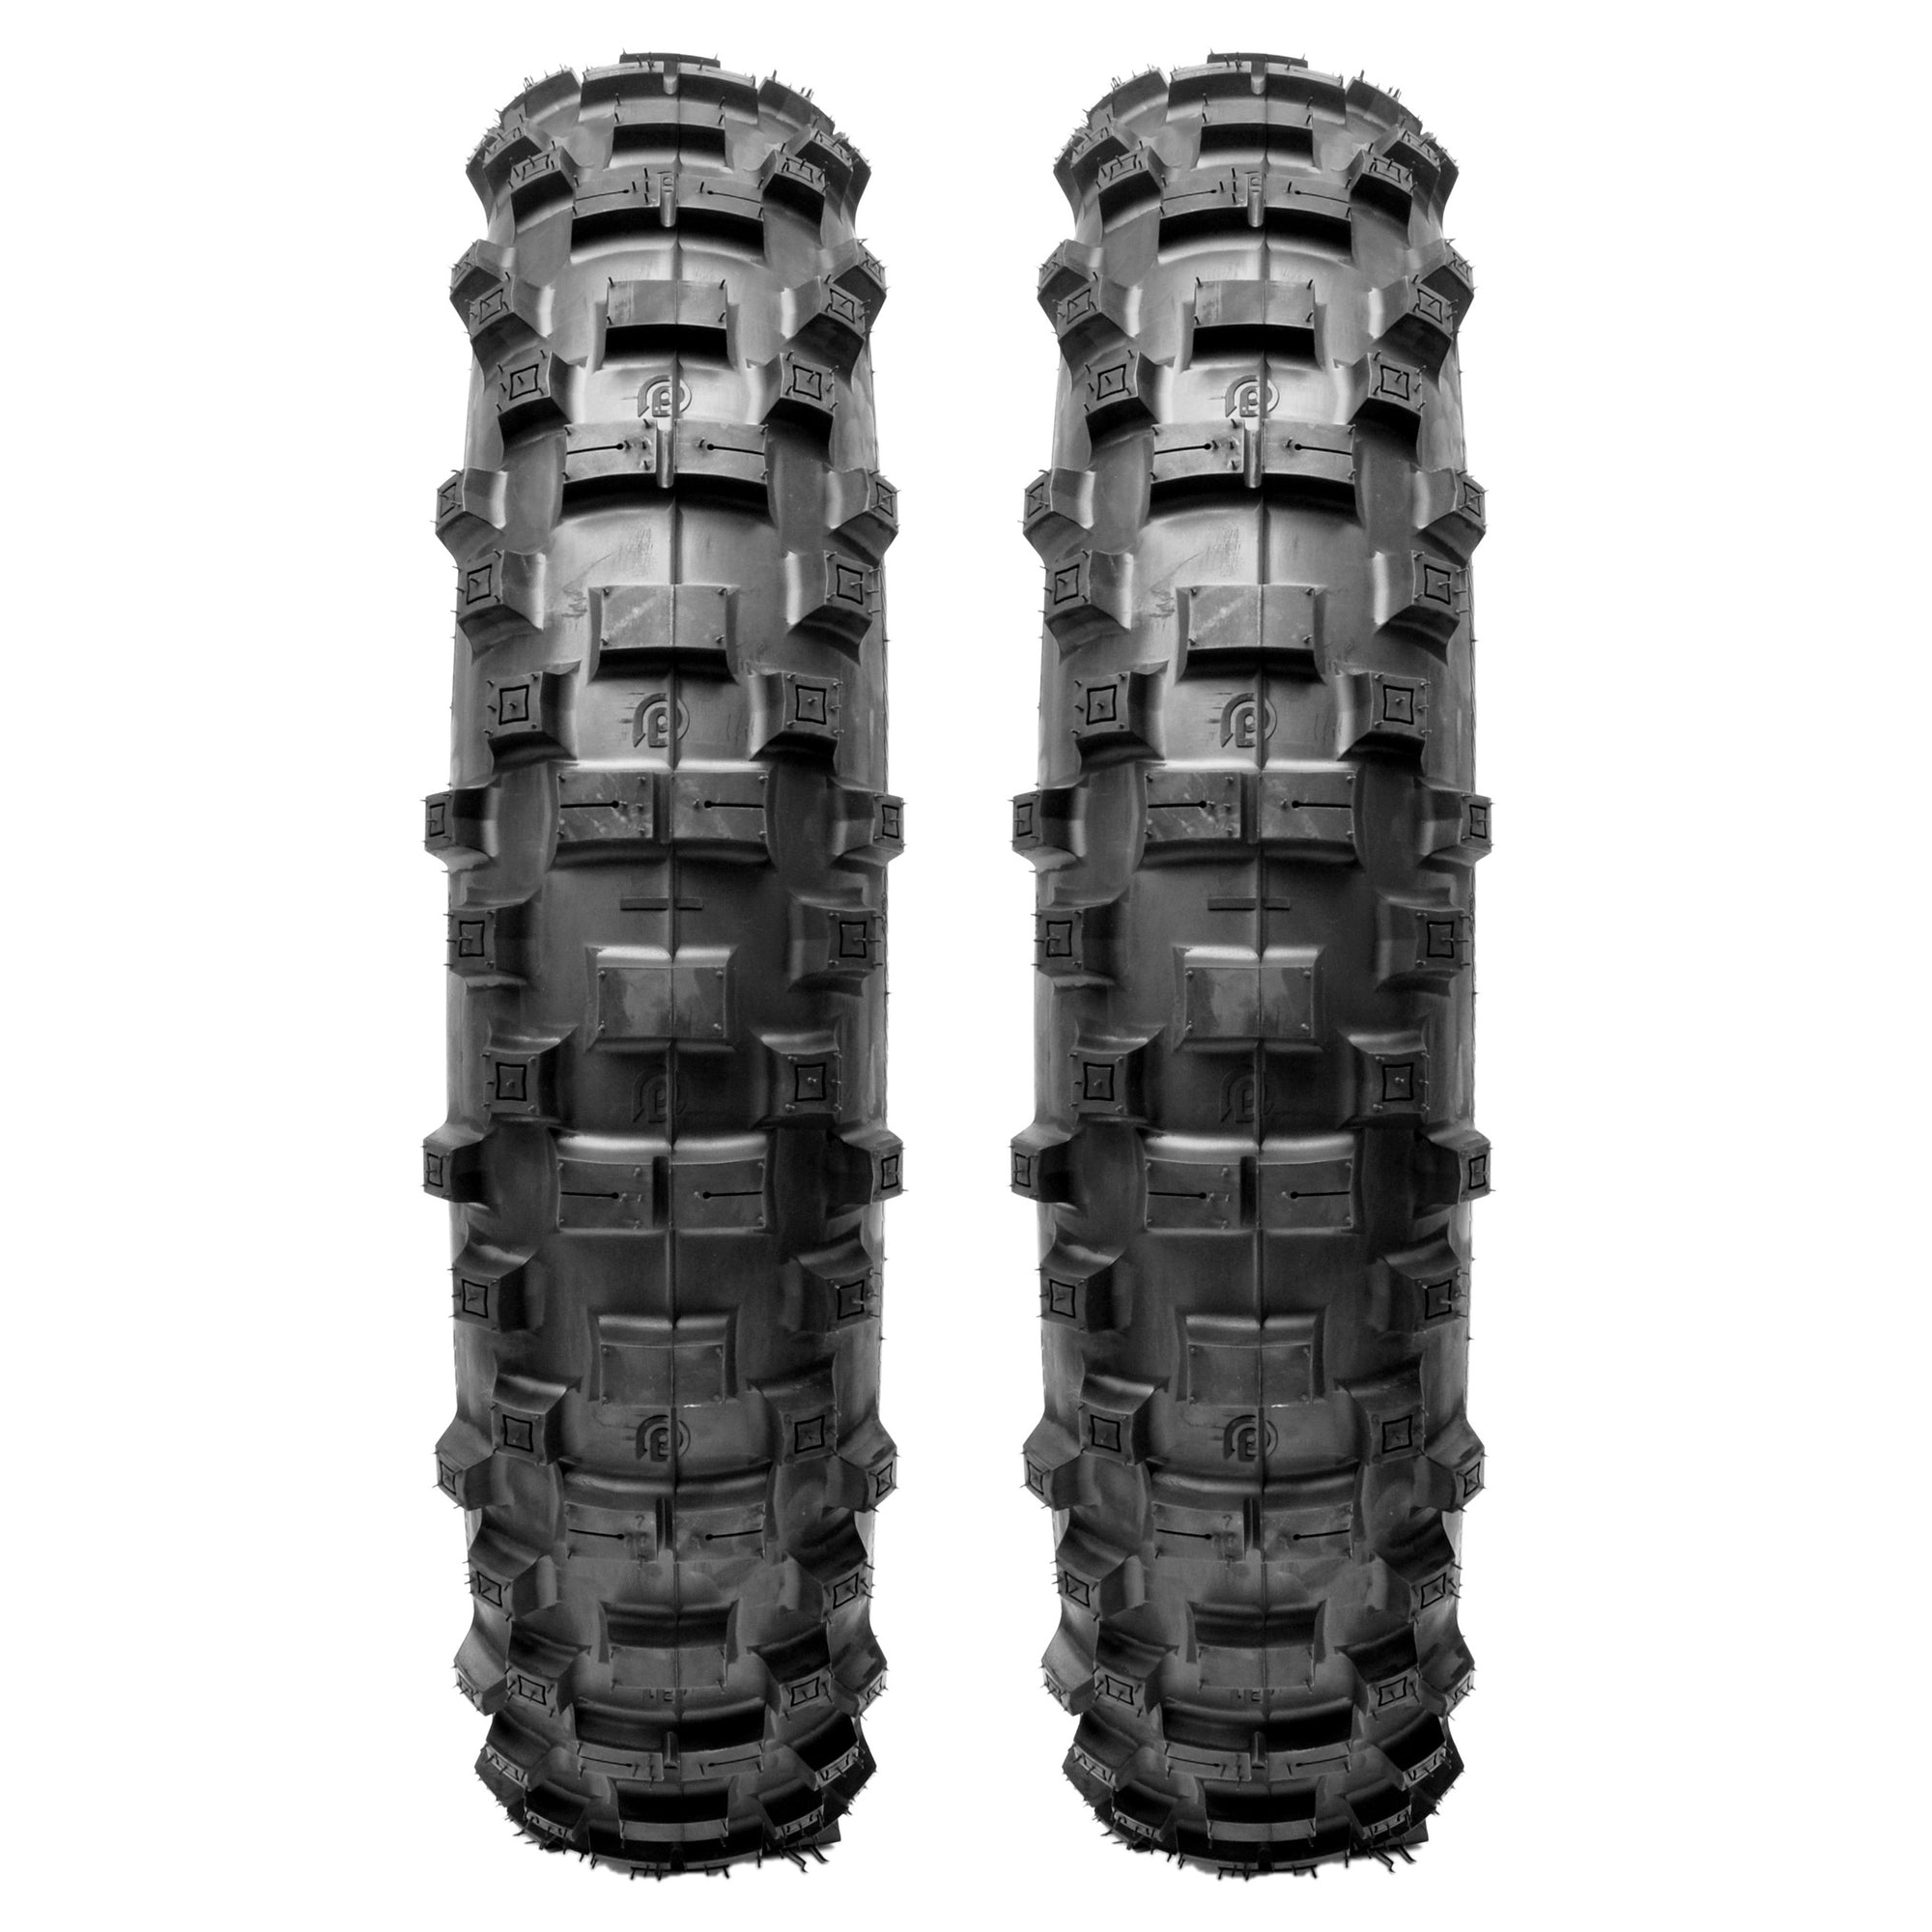 Plews Tyres | GP Enduro Double Rear Set | Two EN1 GRAND PRIX Rear Enduro Tire Bundle - perspective view